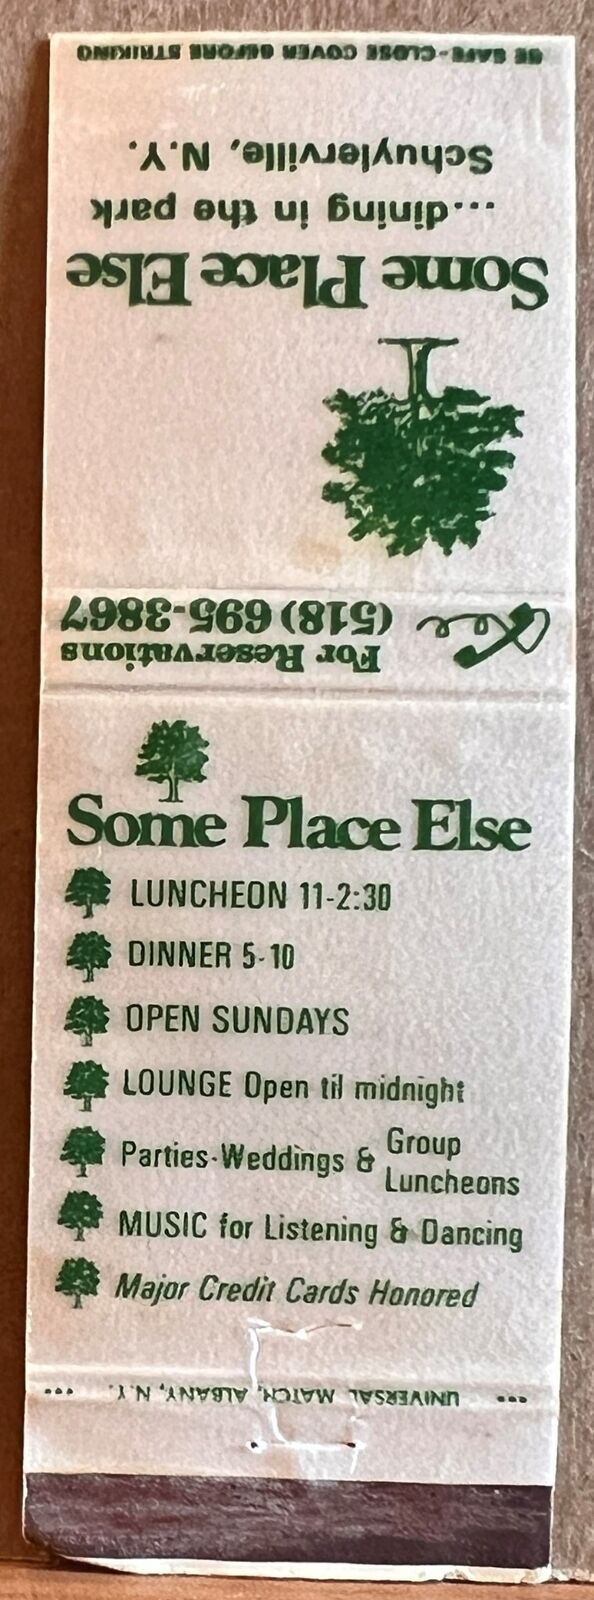 Some Place Else Restaurant Schuylerville NY New York Vintage Matchbook Cover